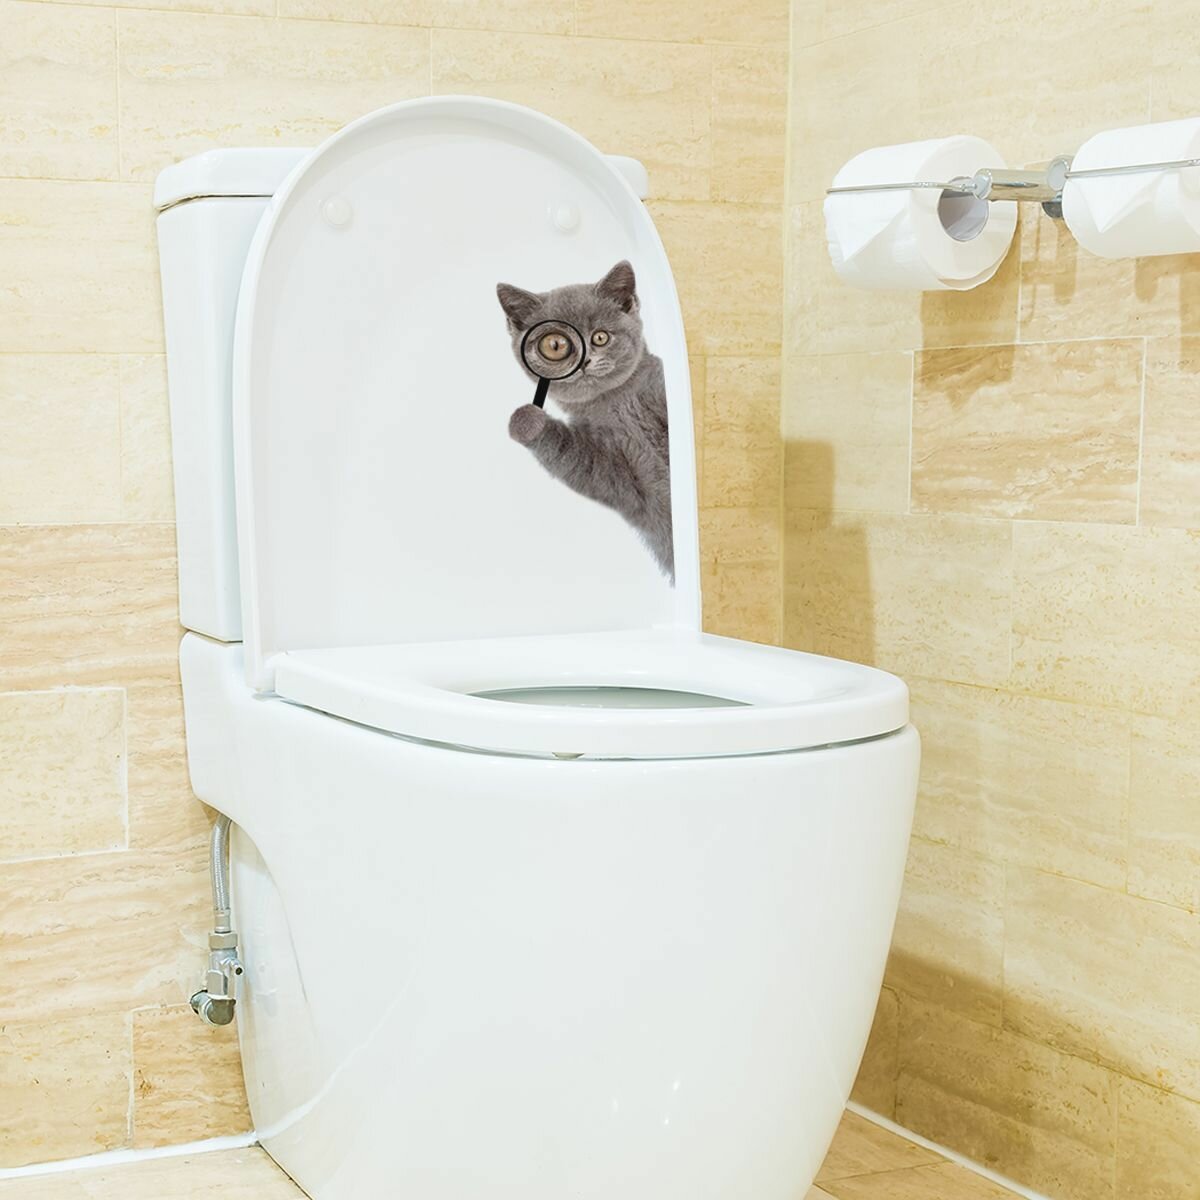 Наклейка на унитаз "Кот следит", для декора интерьера ванной, кухни, детской комнаты